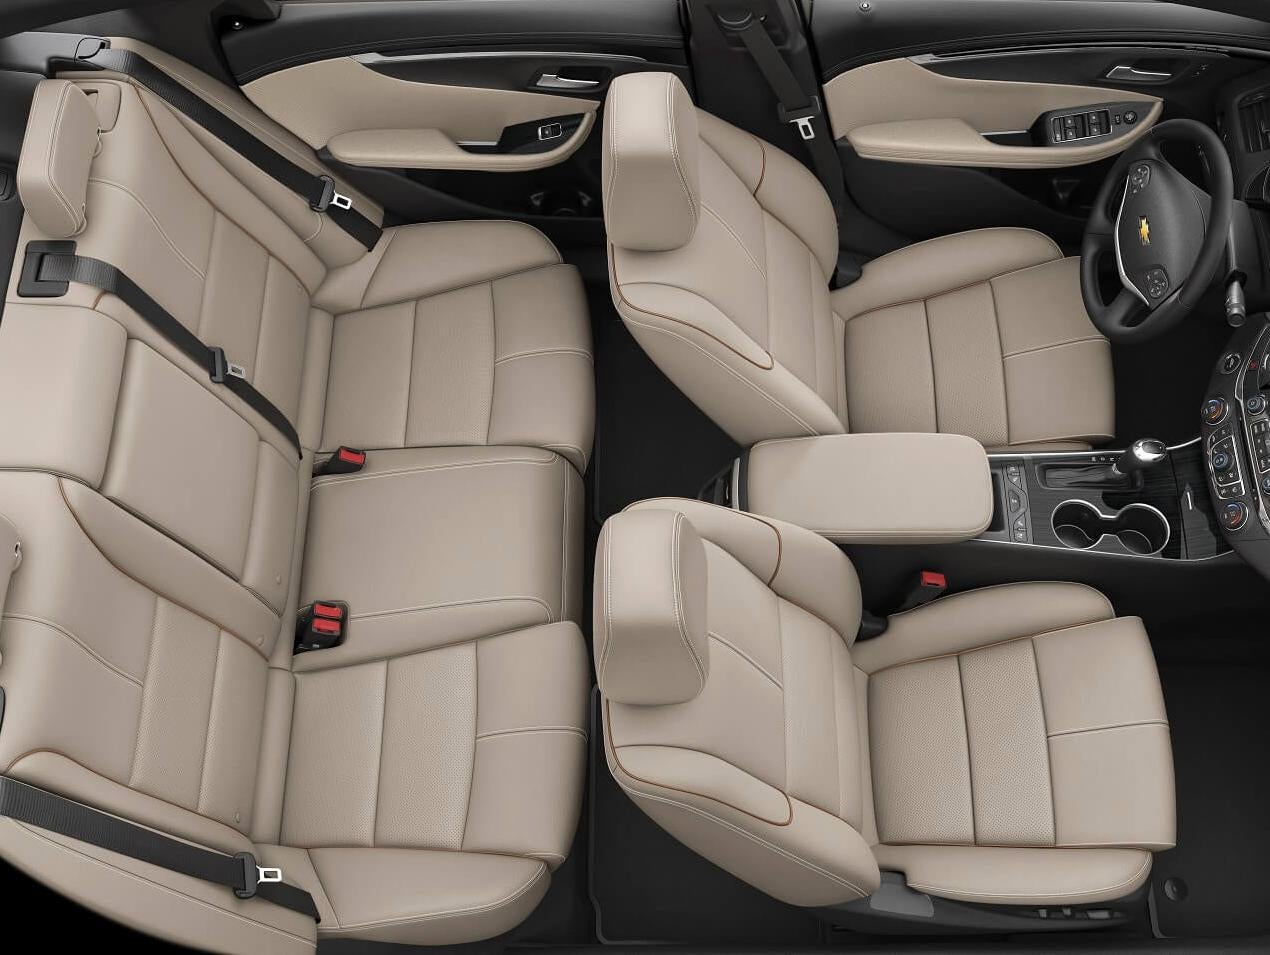 2020 Chevy Impala interior